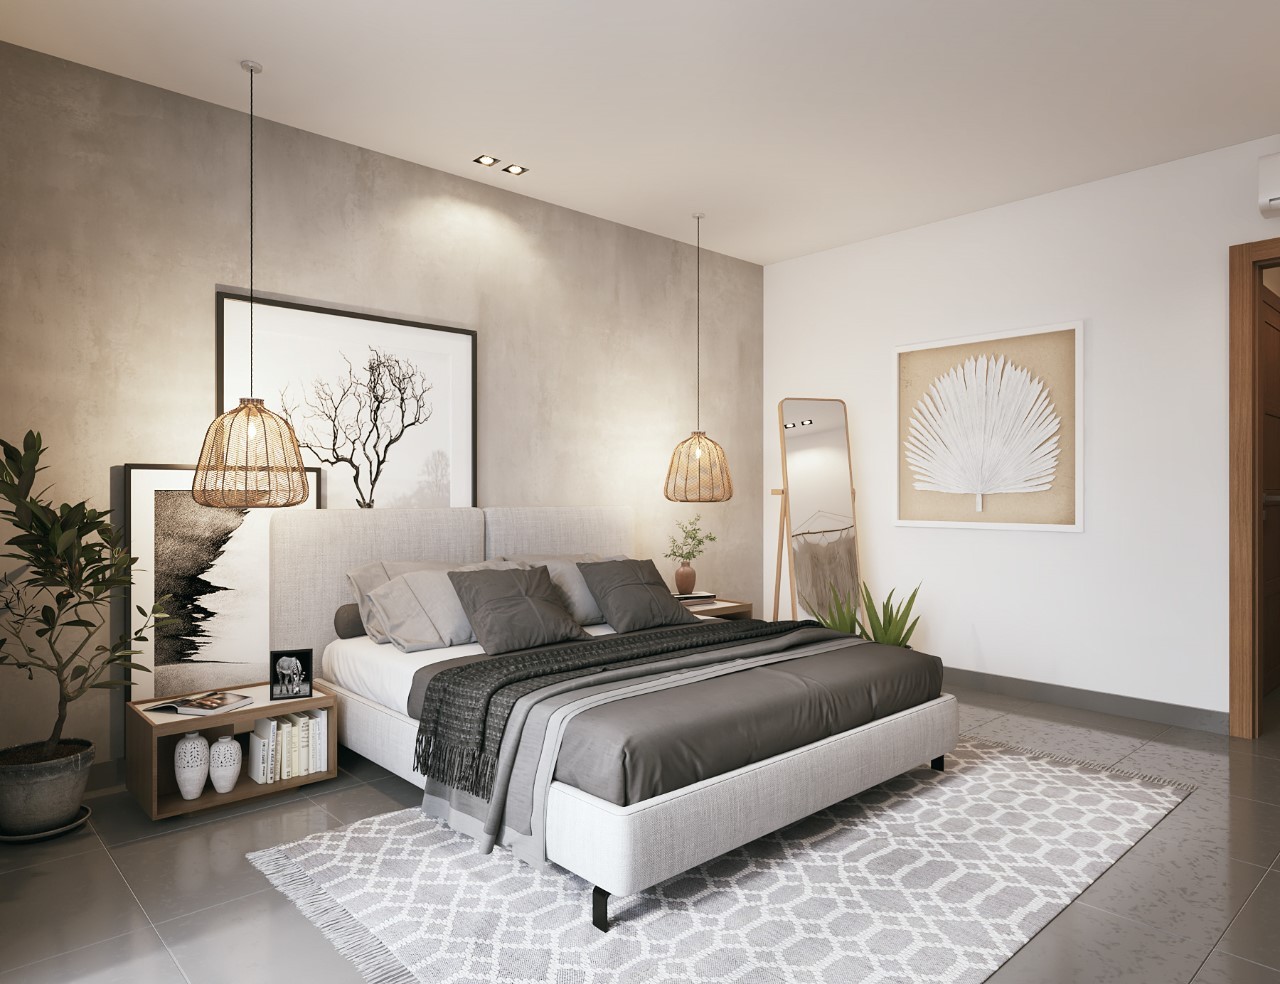 Thiết kế phòng ngủ phong cách Scandinavian đẹpvới nhiều tranh trừu tượng